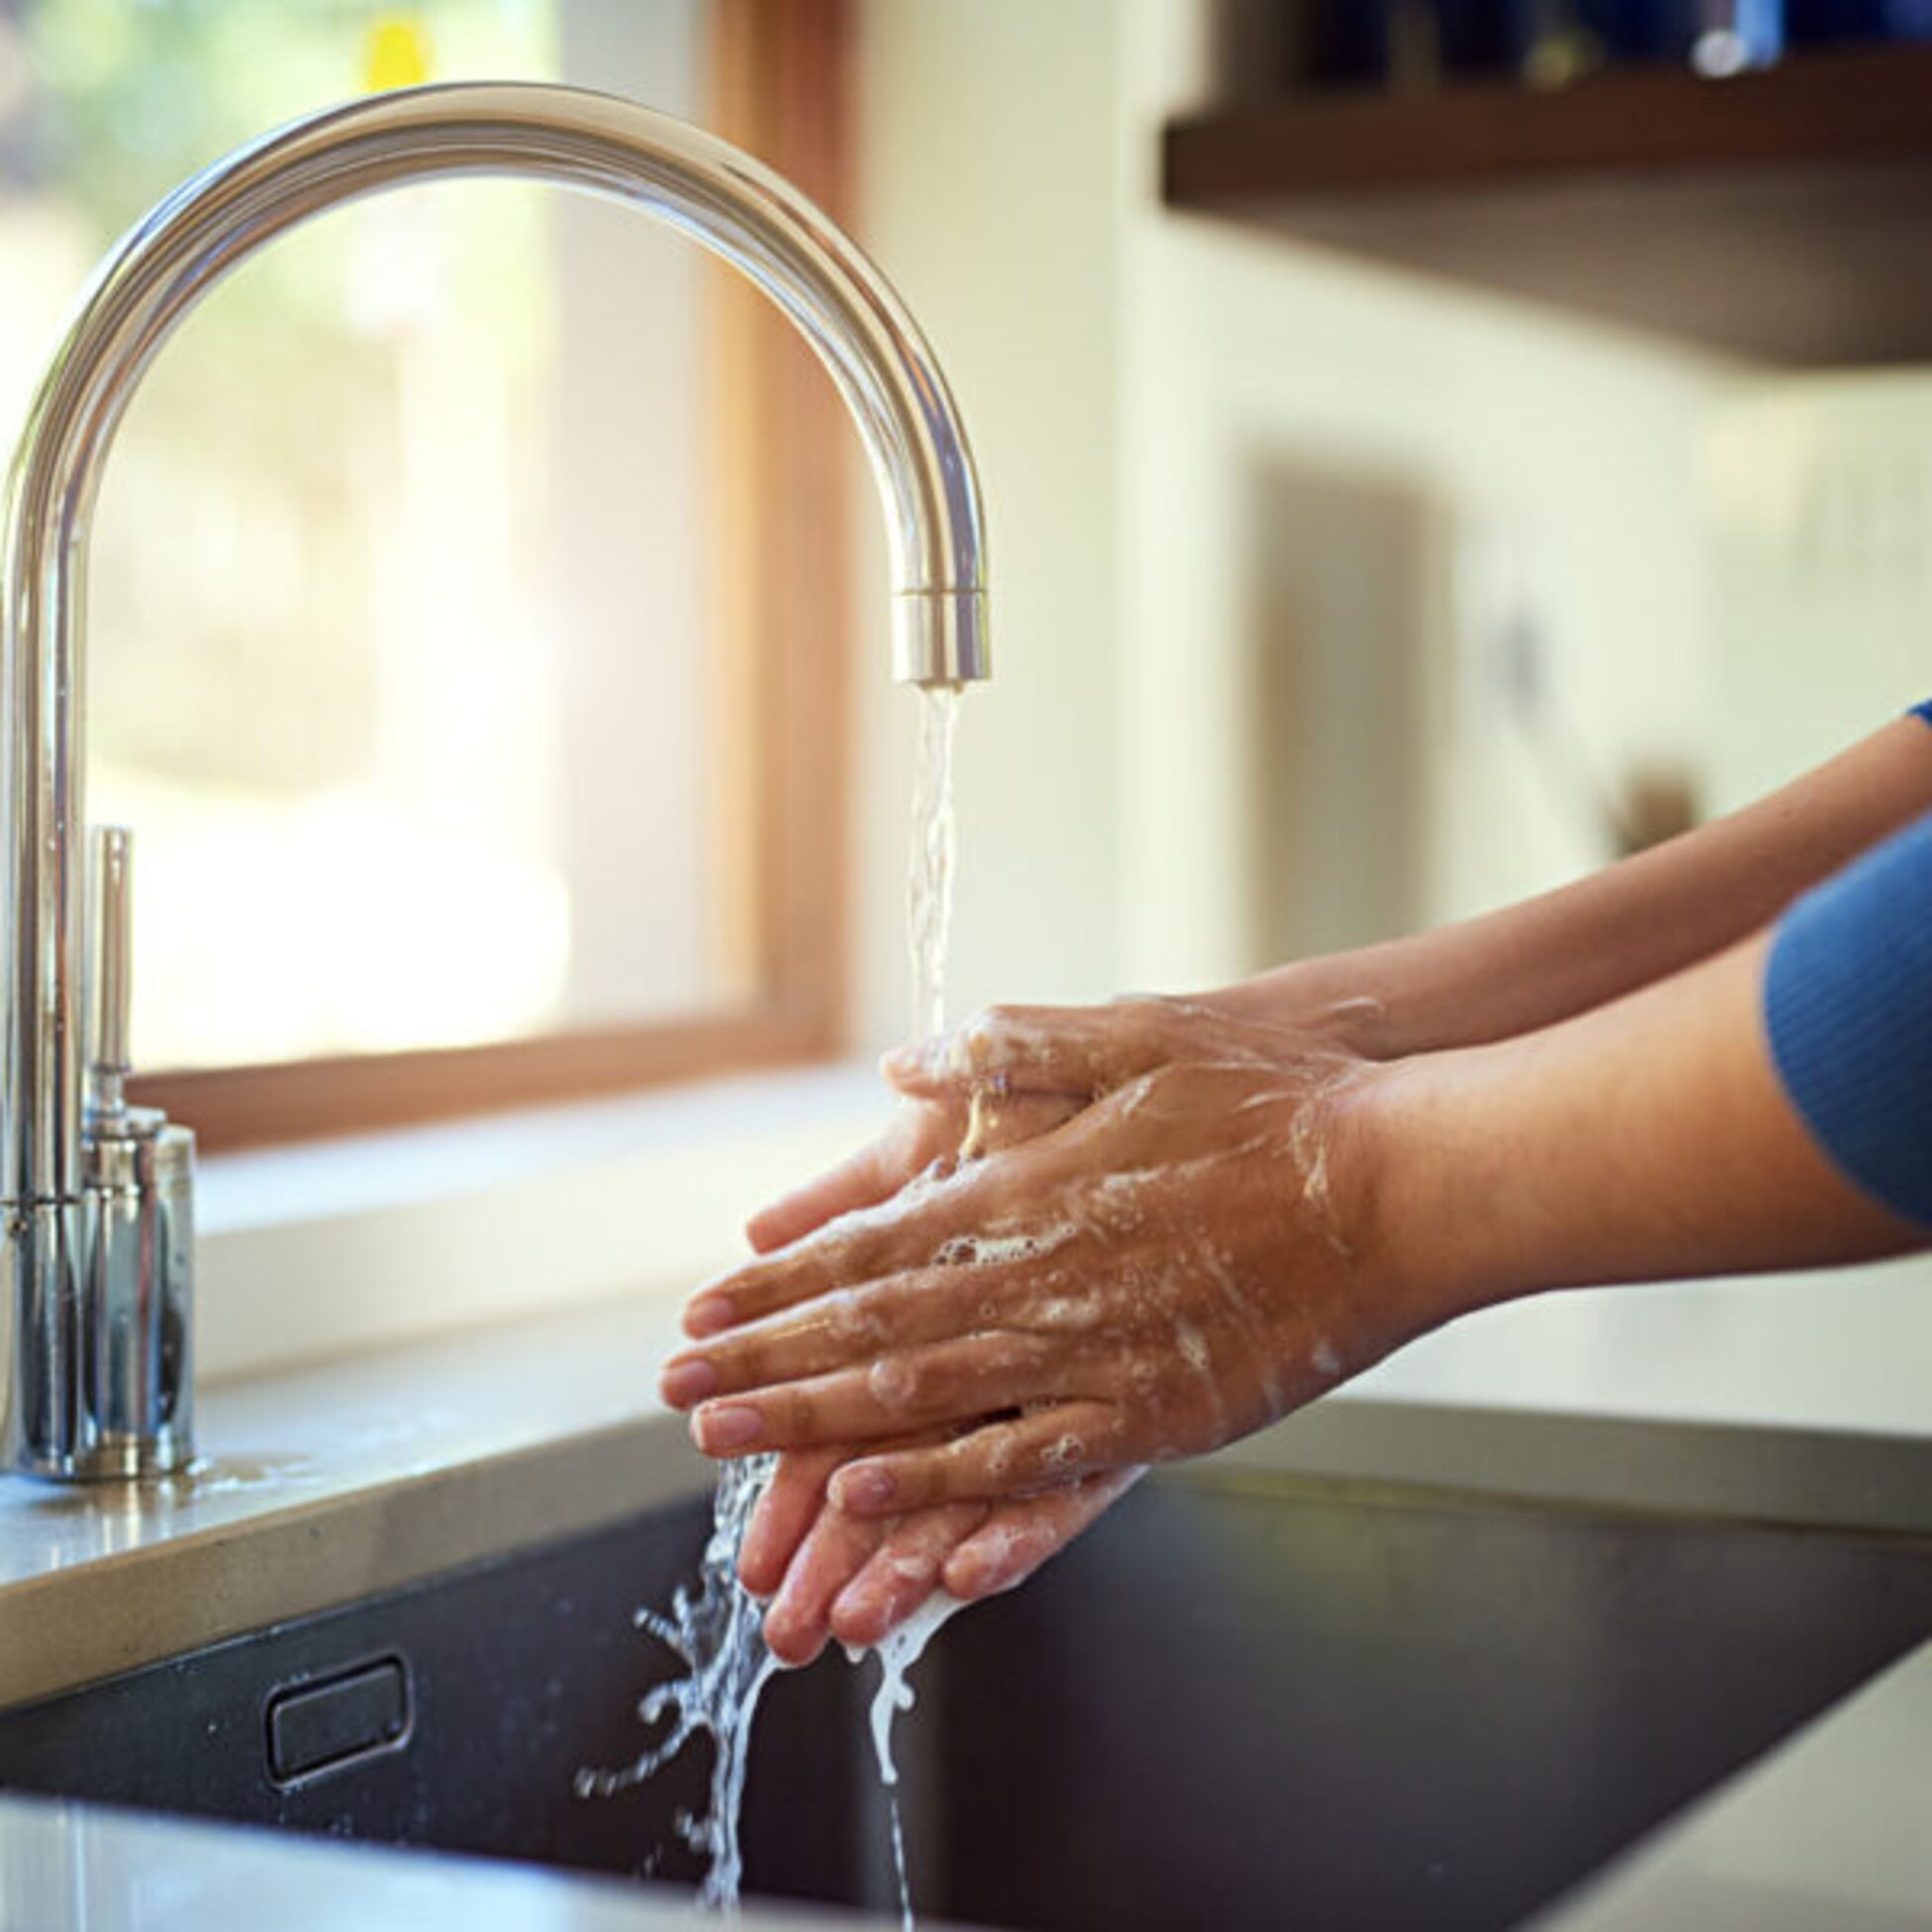 Frau wascht Hände unter Wasserhahn